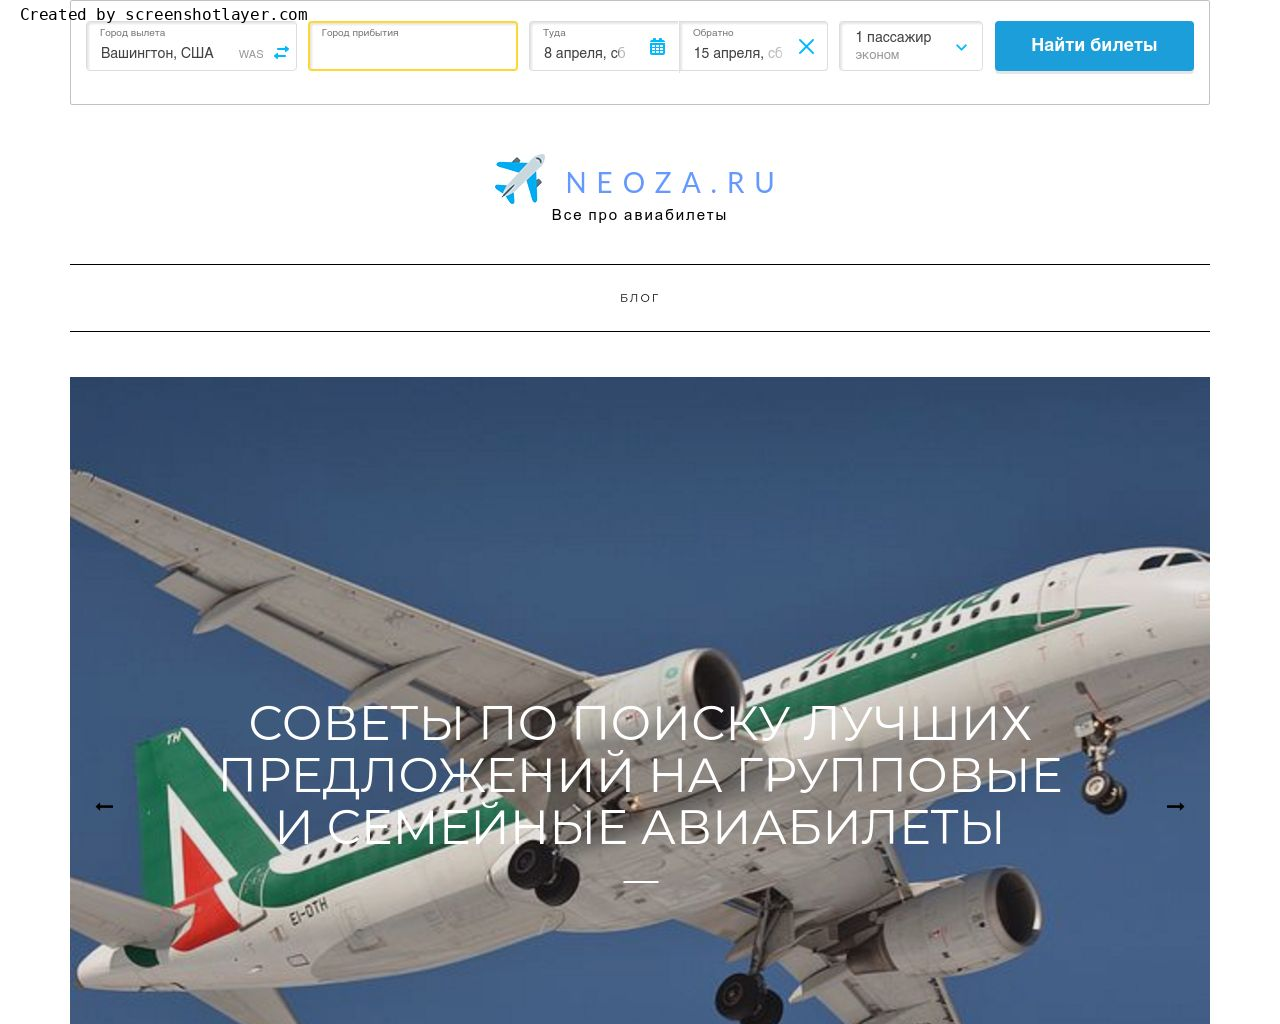 Информация о neoza.ru (Все, что вам нужно знать о бронировании рейсов) .